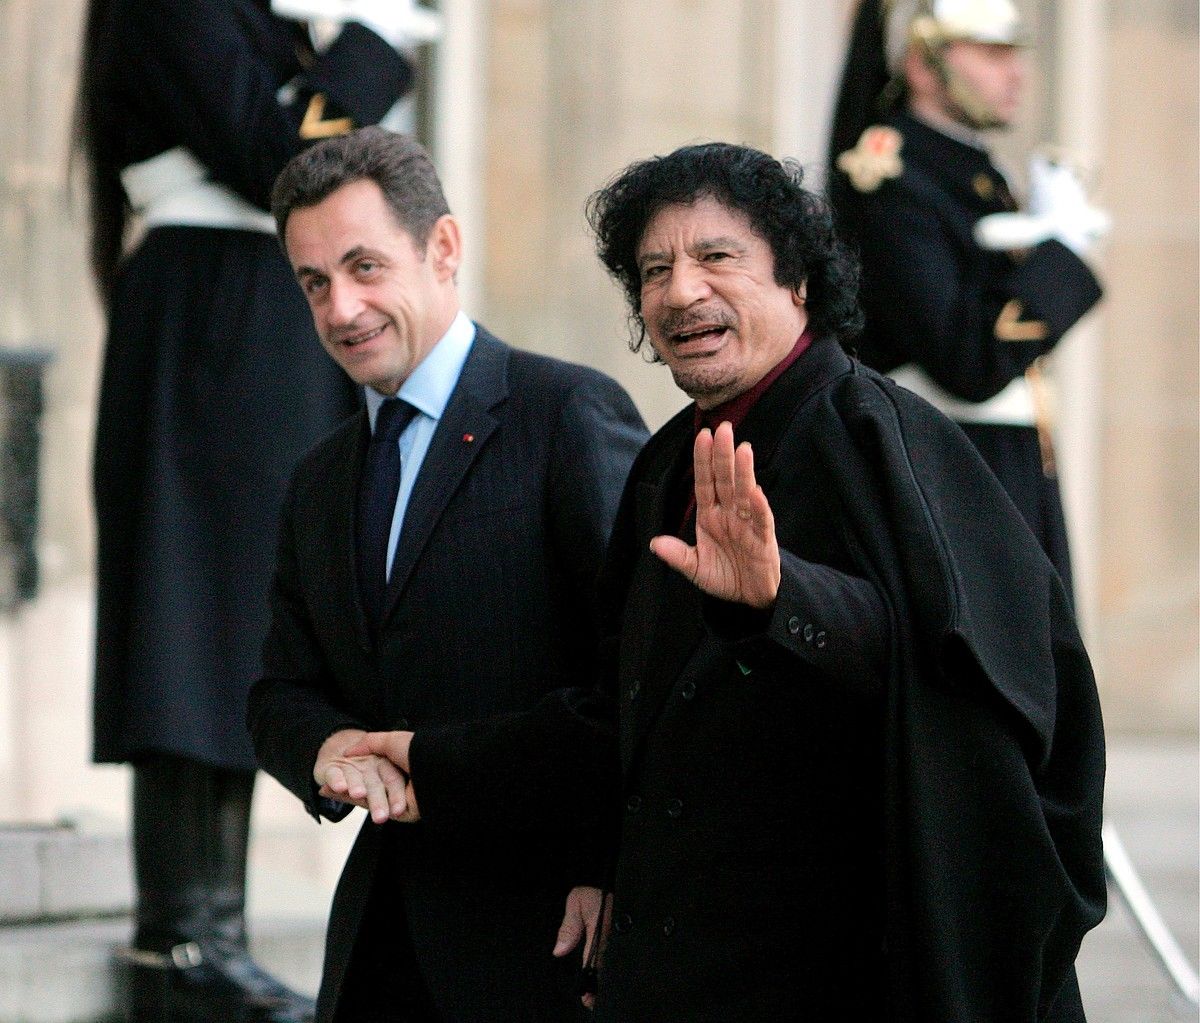 Nicolas Sarkozy eta Muammar Gaddafi, 2007ko abenduan, Eliseoan. Urte hartan hautatu zuten Sarkozy Frantziako presidente. MAYA VIDON / EFE.